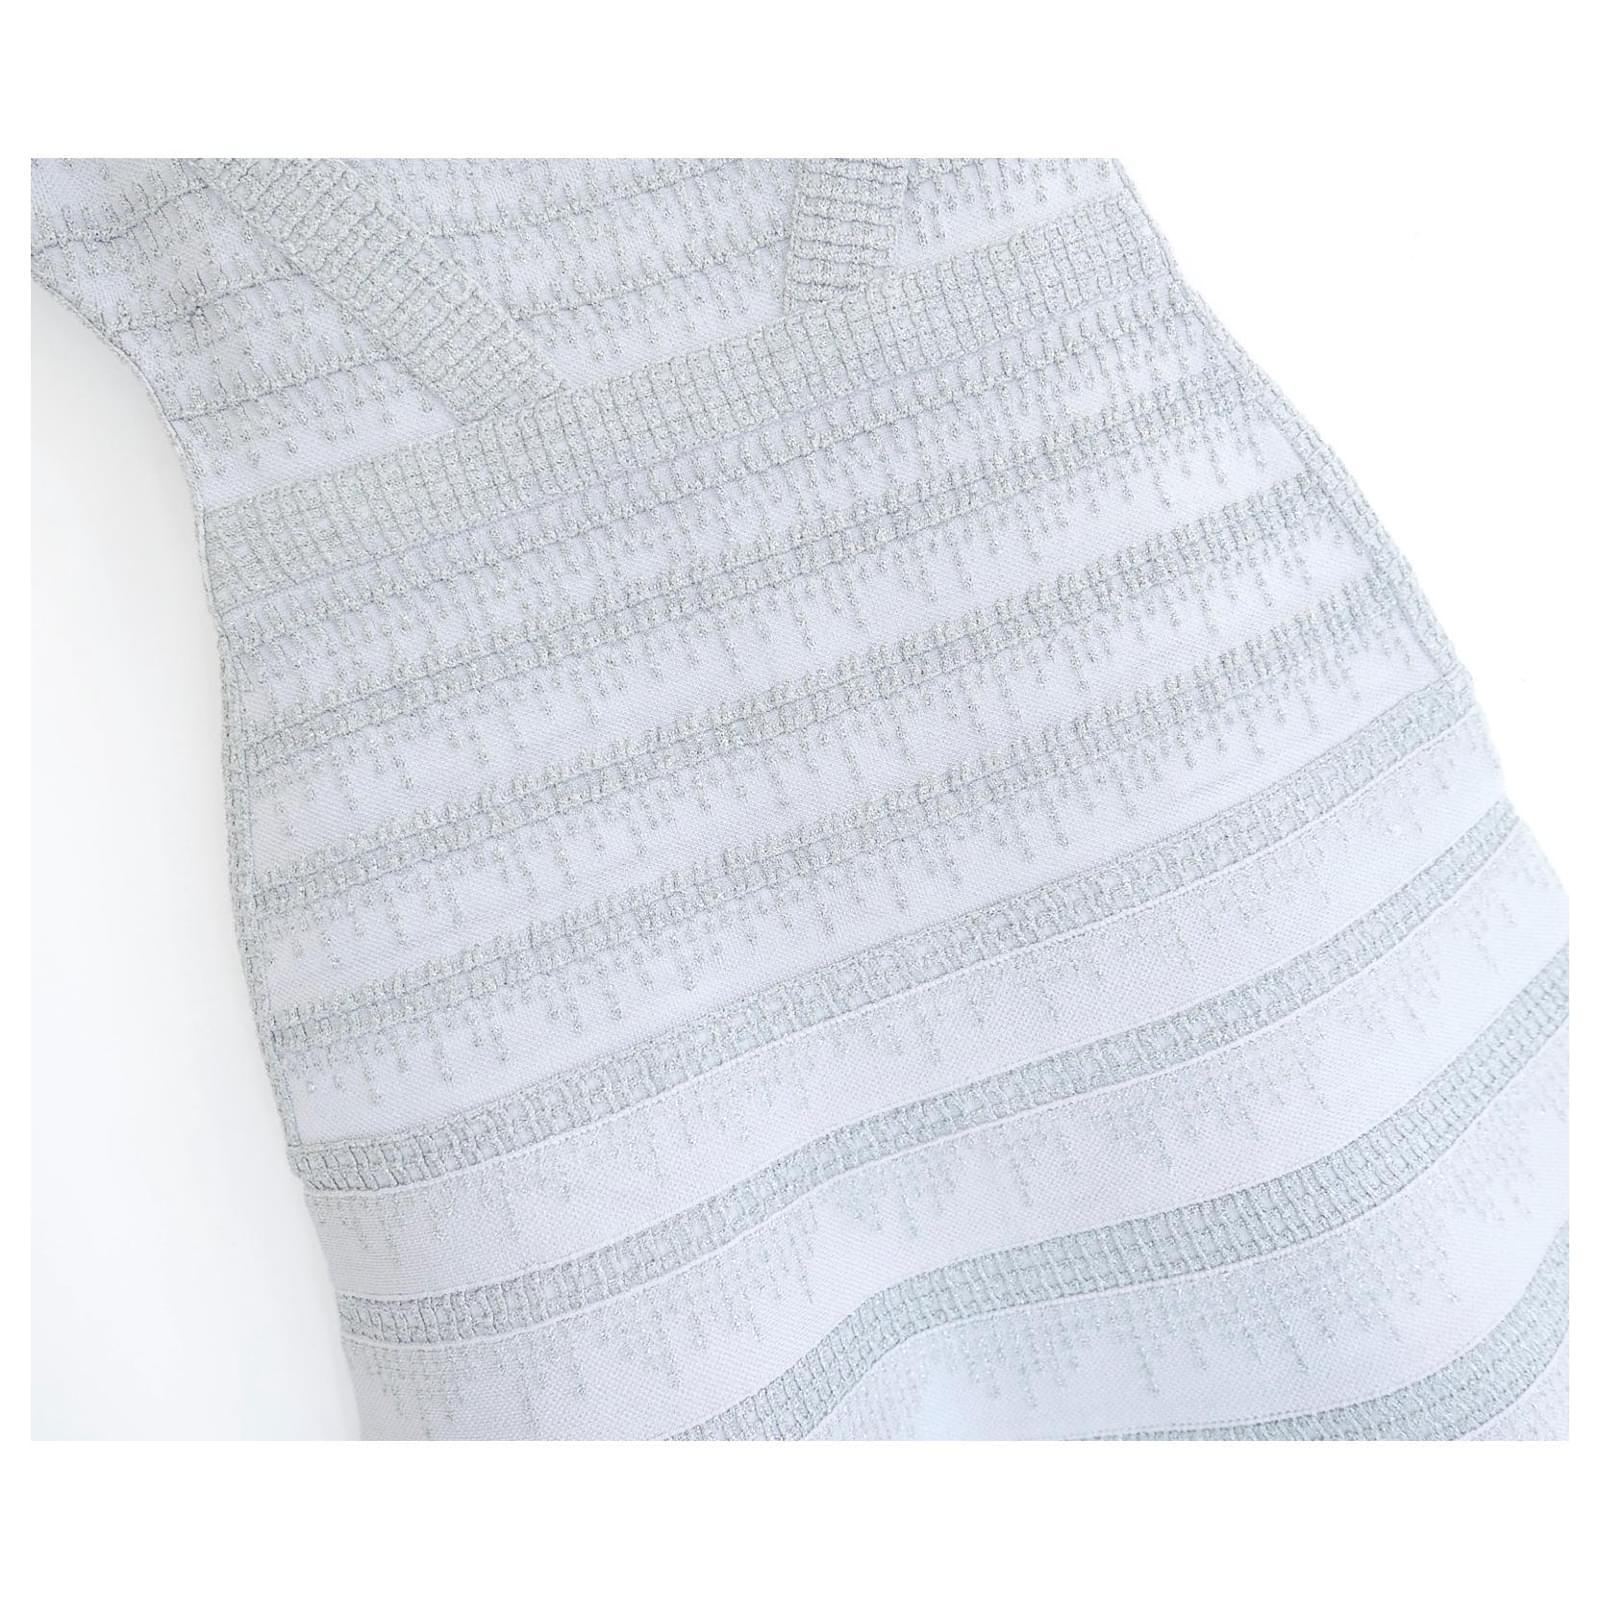 magnifique robe Carole de Herve Leger - achetée pour £1125 et neuve avec les étiquettes. Confectionné dans le mélange de rayonne épais et super extensible caractéristique de Léger, dans une magnifique teinte bleu perle glacée, avec de superbes